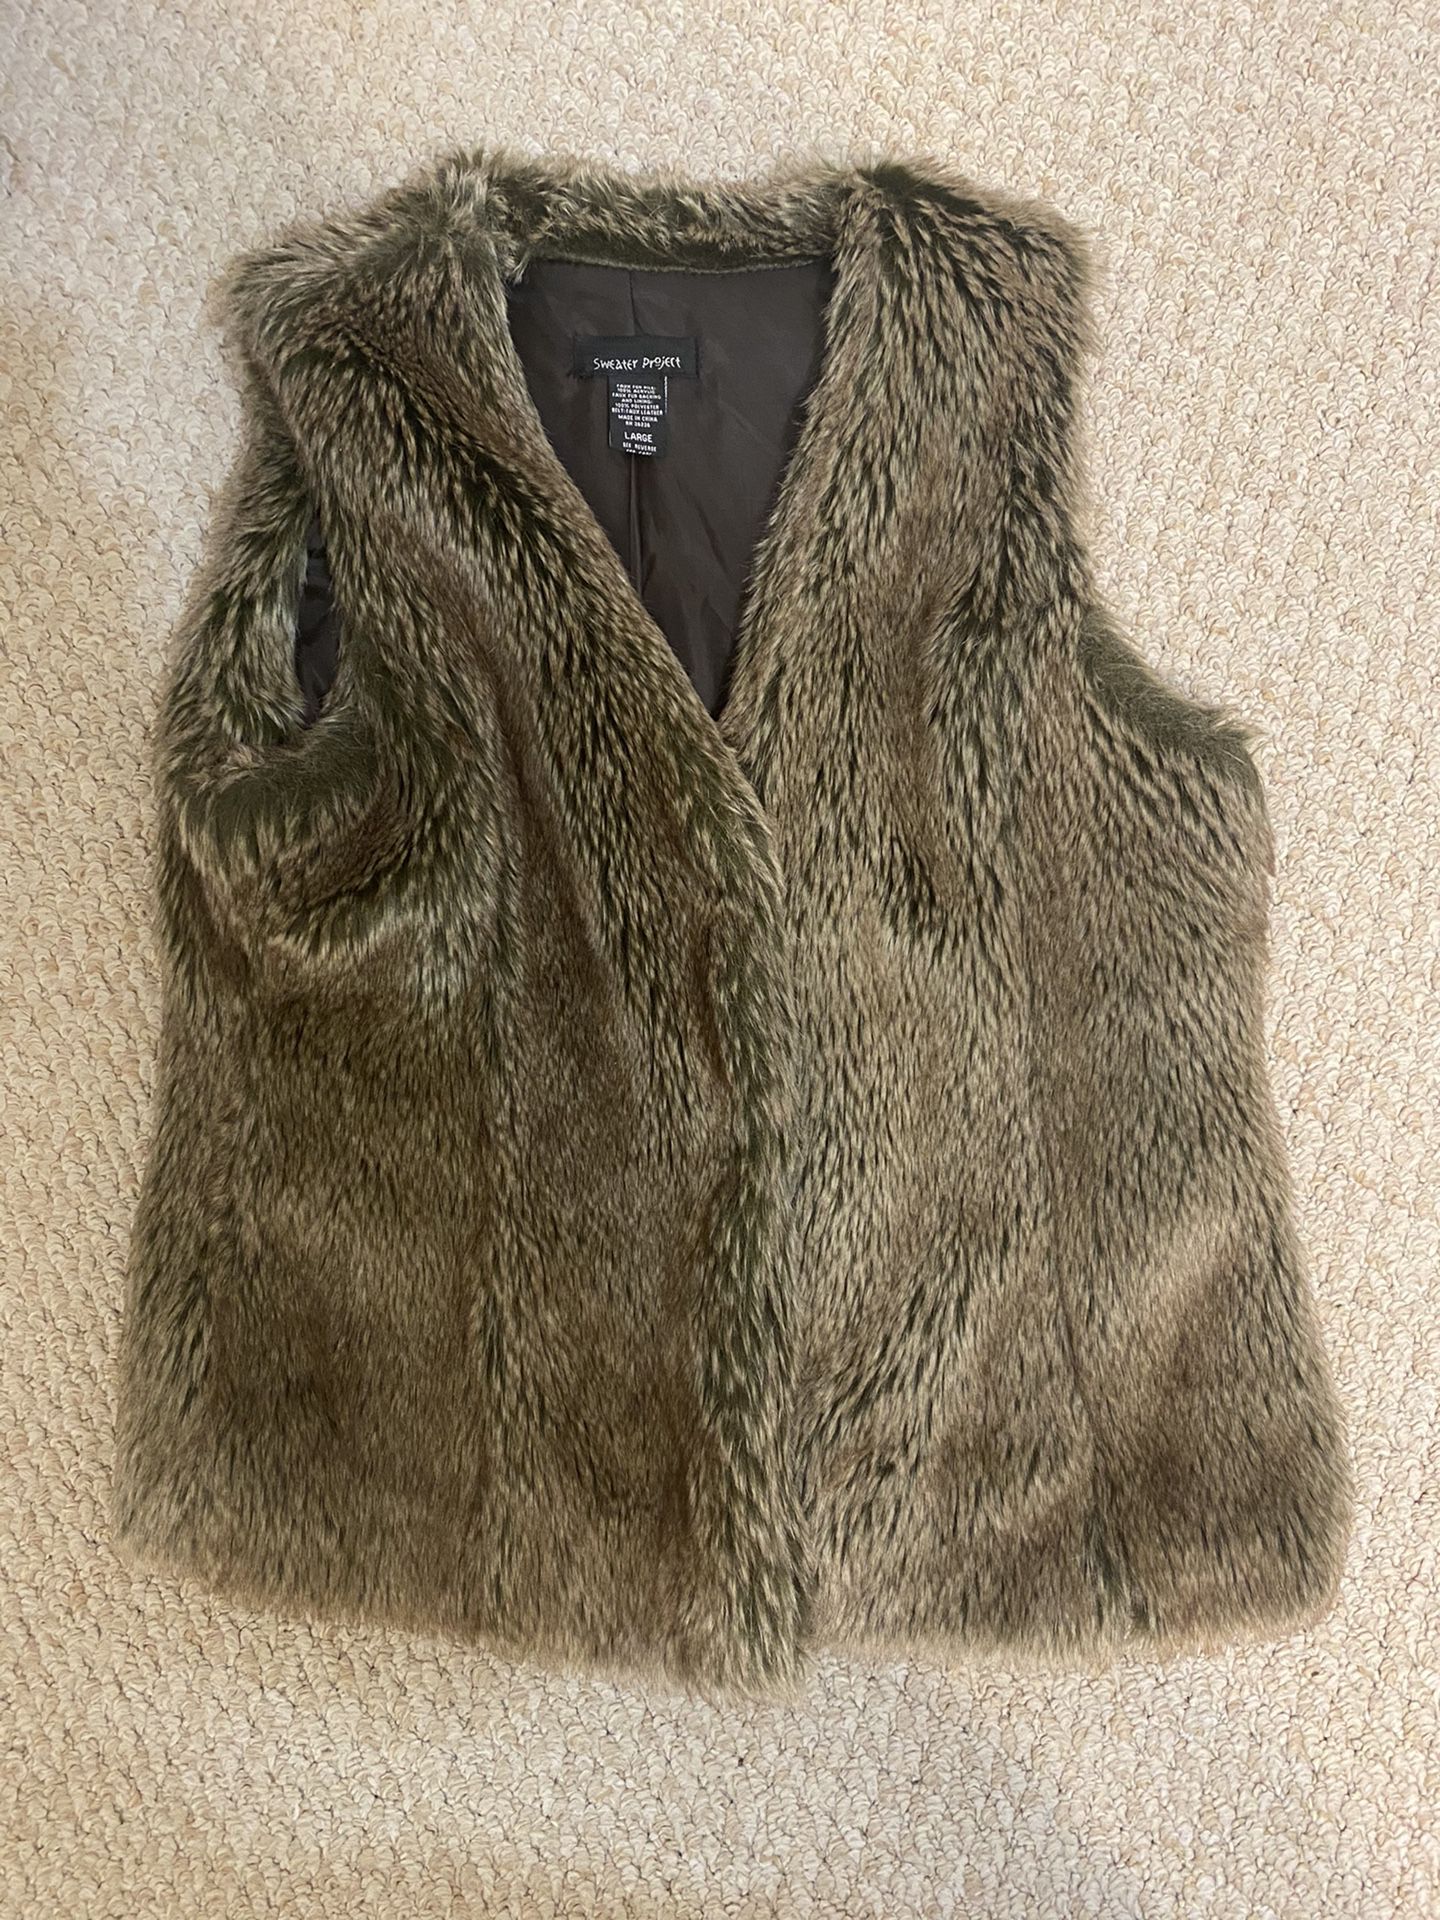 Sweater Project Faux Fur Vest Size Large